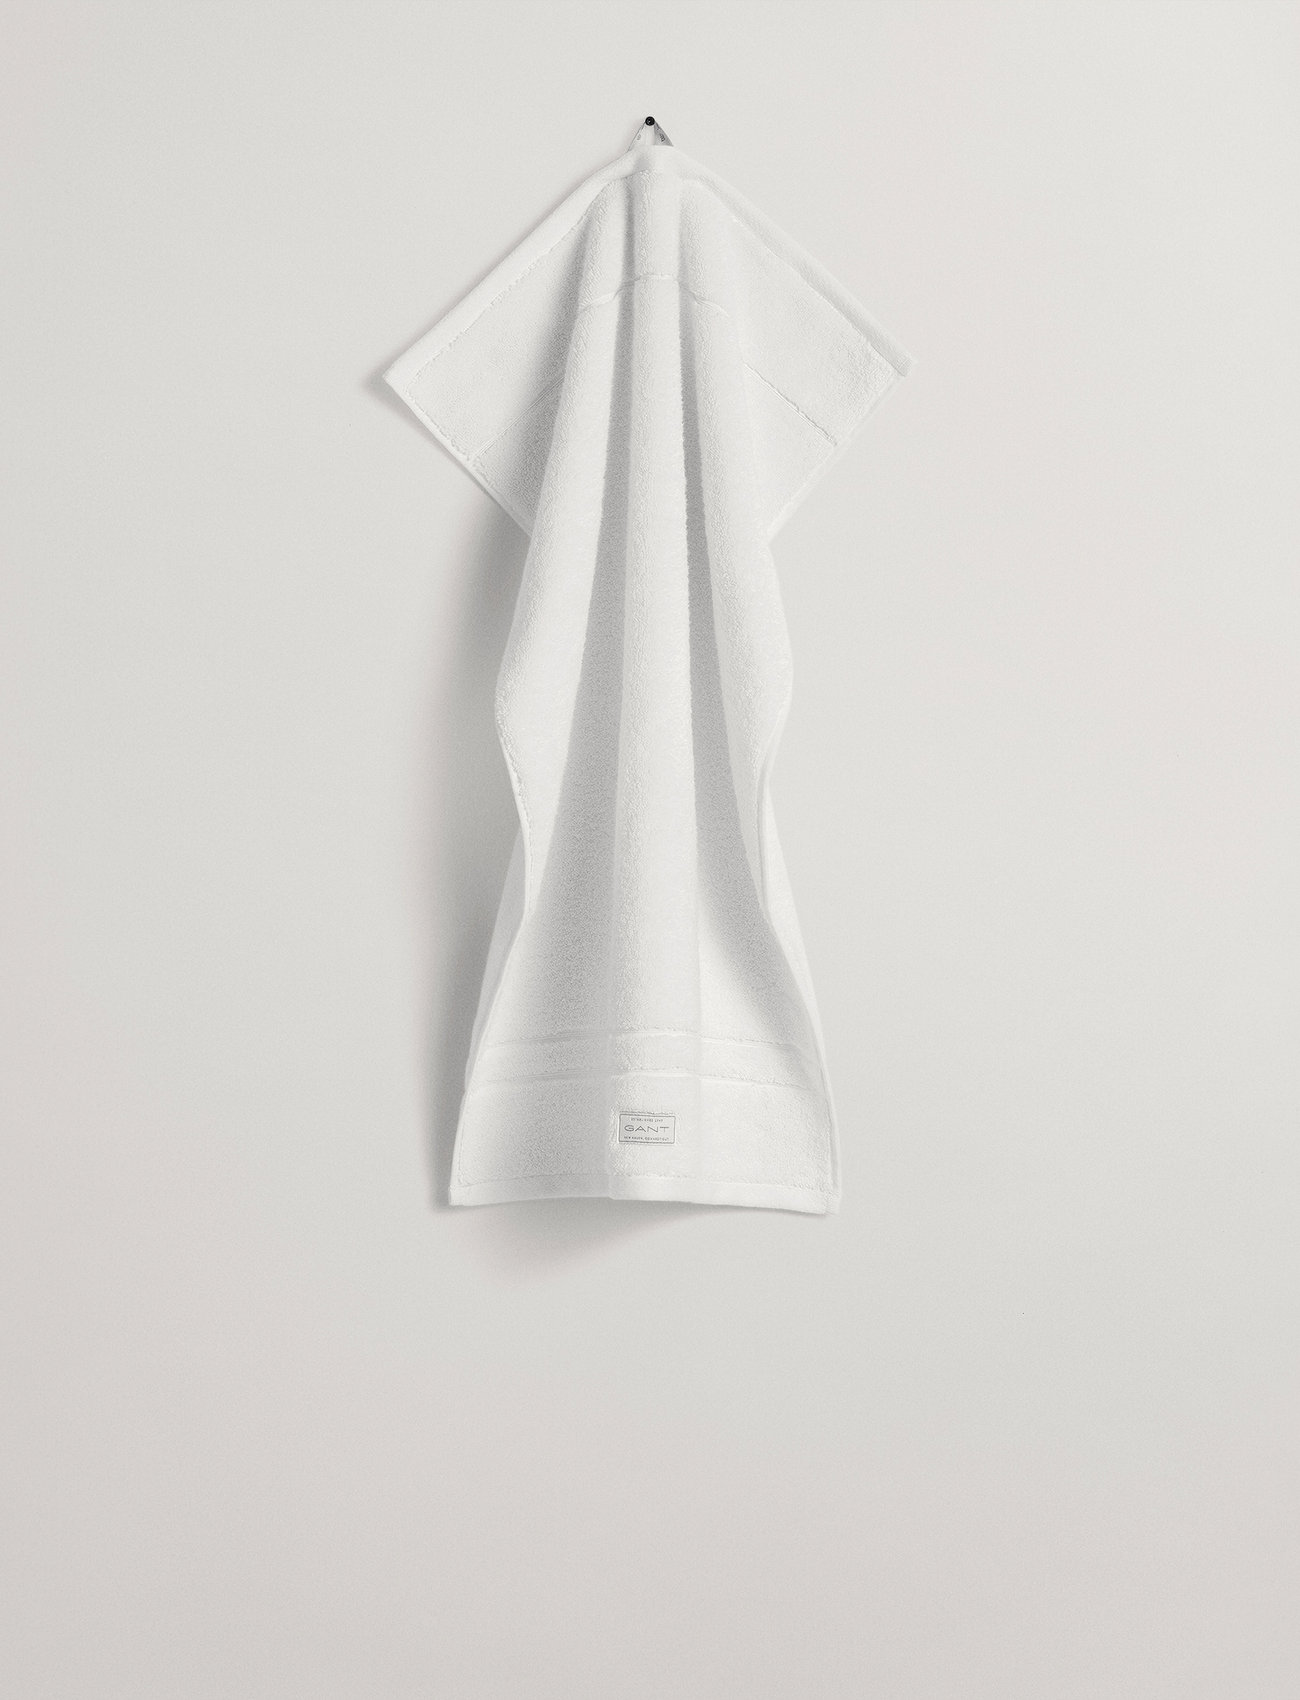 GANT - PREMIUM TOWEL 30X50 - laveste priser - white - 1